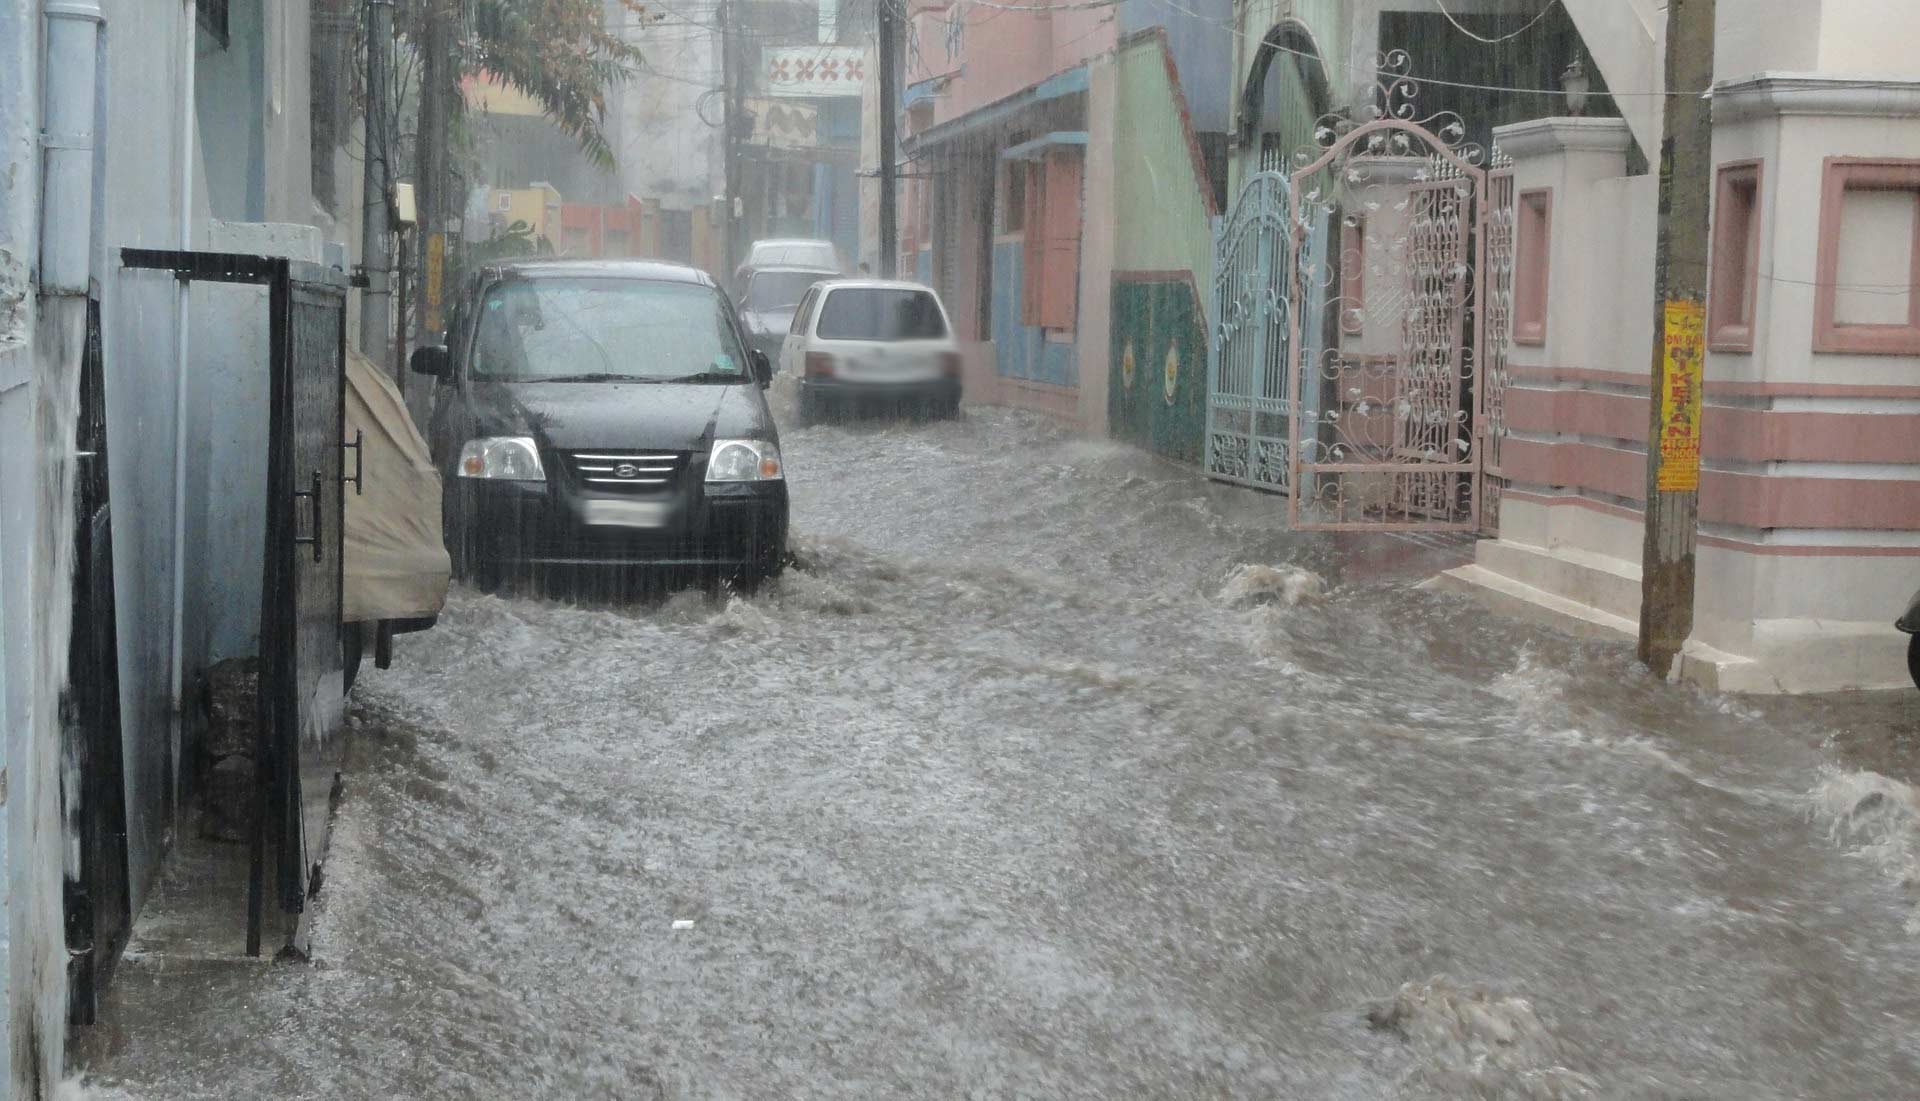 Rischio idrogeologico, Solinas sollecita i sindaci: aggiornate i piani di rischio